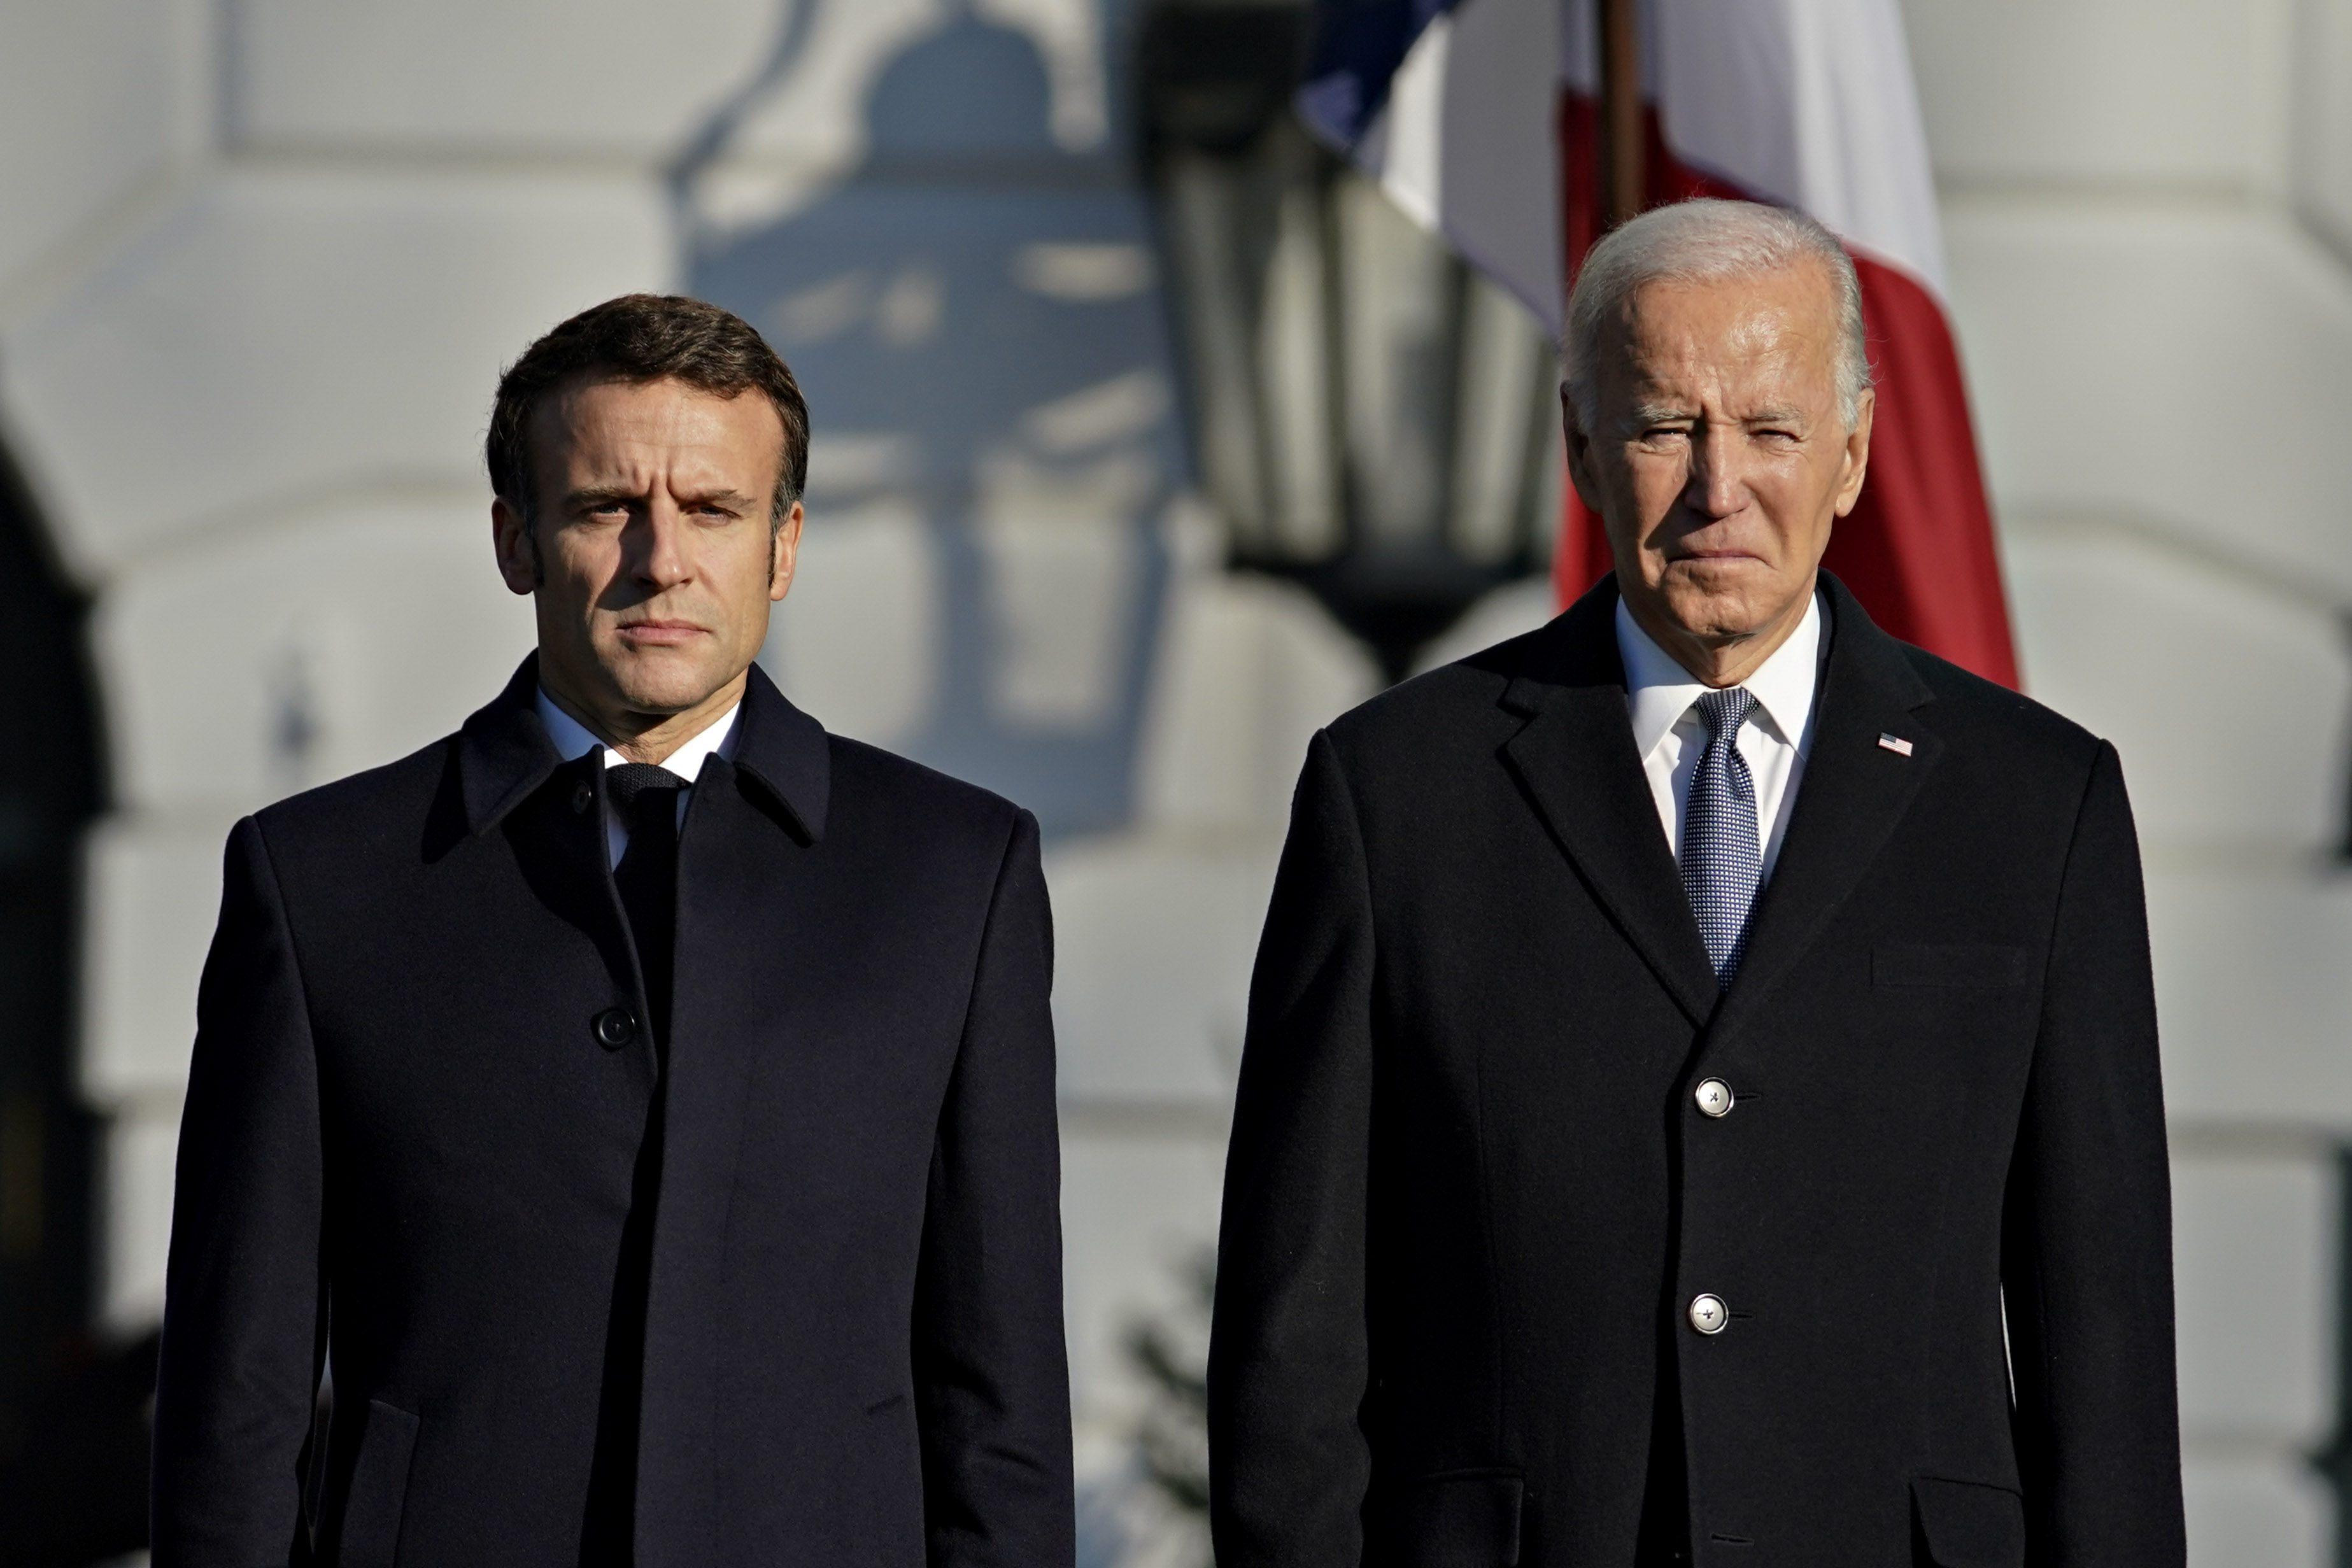 US President Joe Biden, right, and Emmanuel Macron, France's president, at&nbsp;the White House&nbsp;on&nbsp;Dec. 1, 2022.